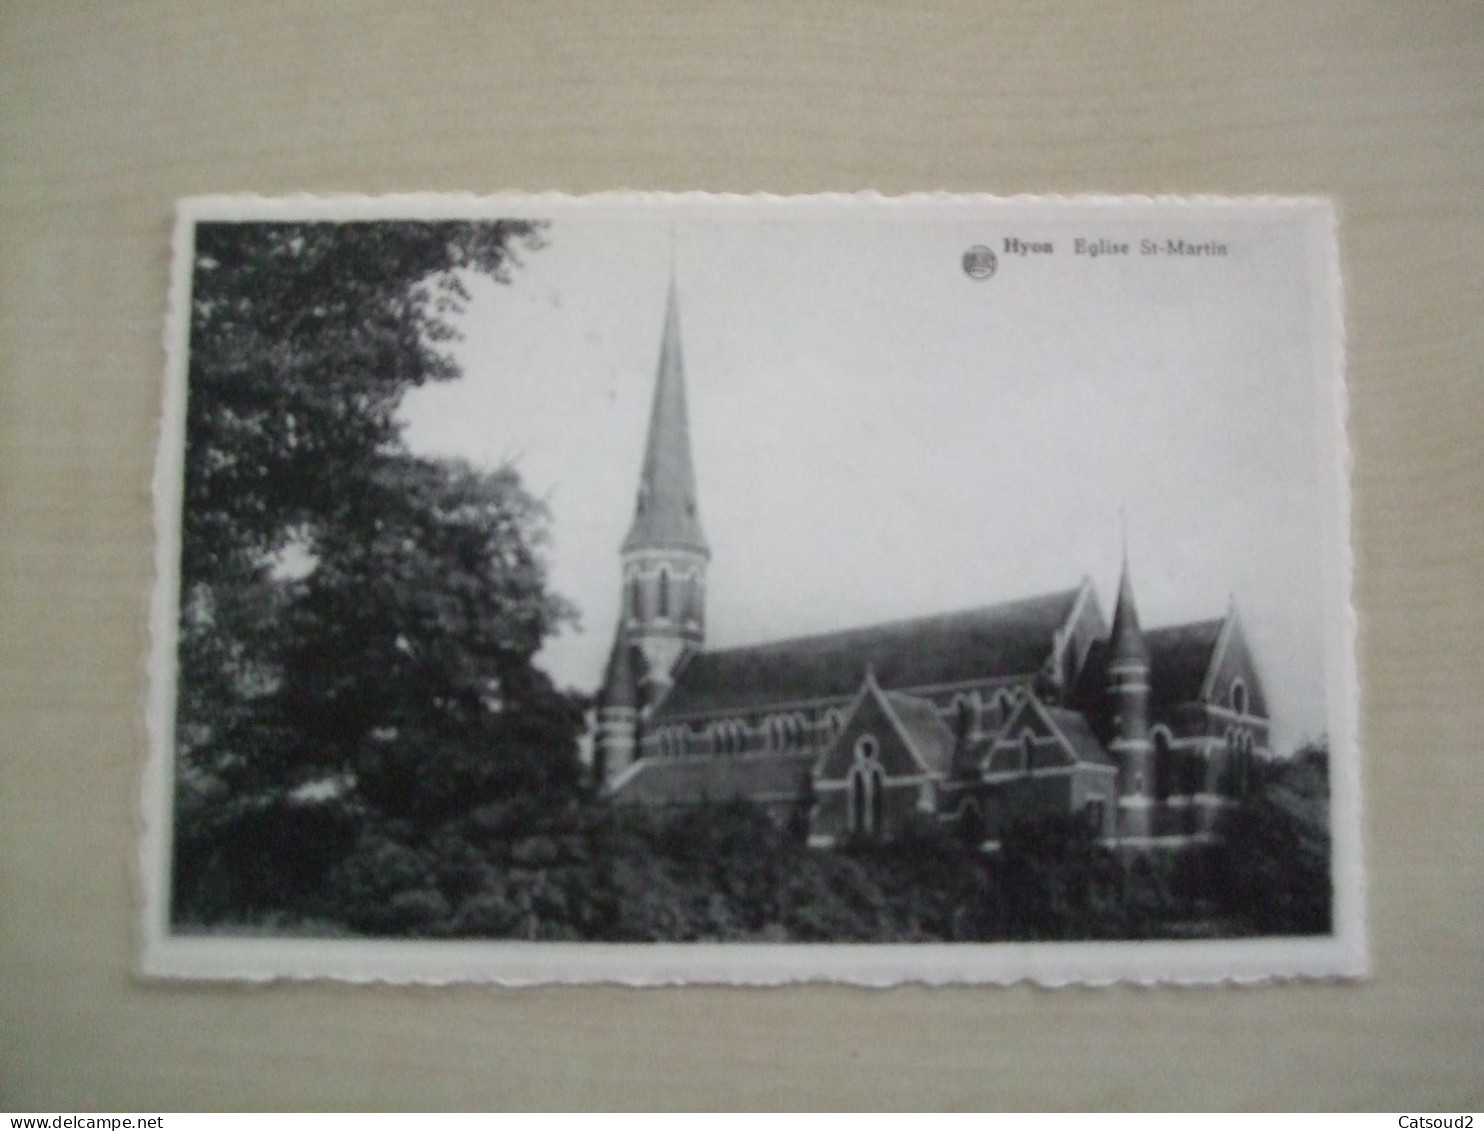 Carte Postale Ancienne HYON L'église St Martin - Mons